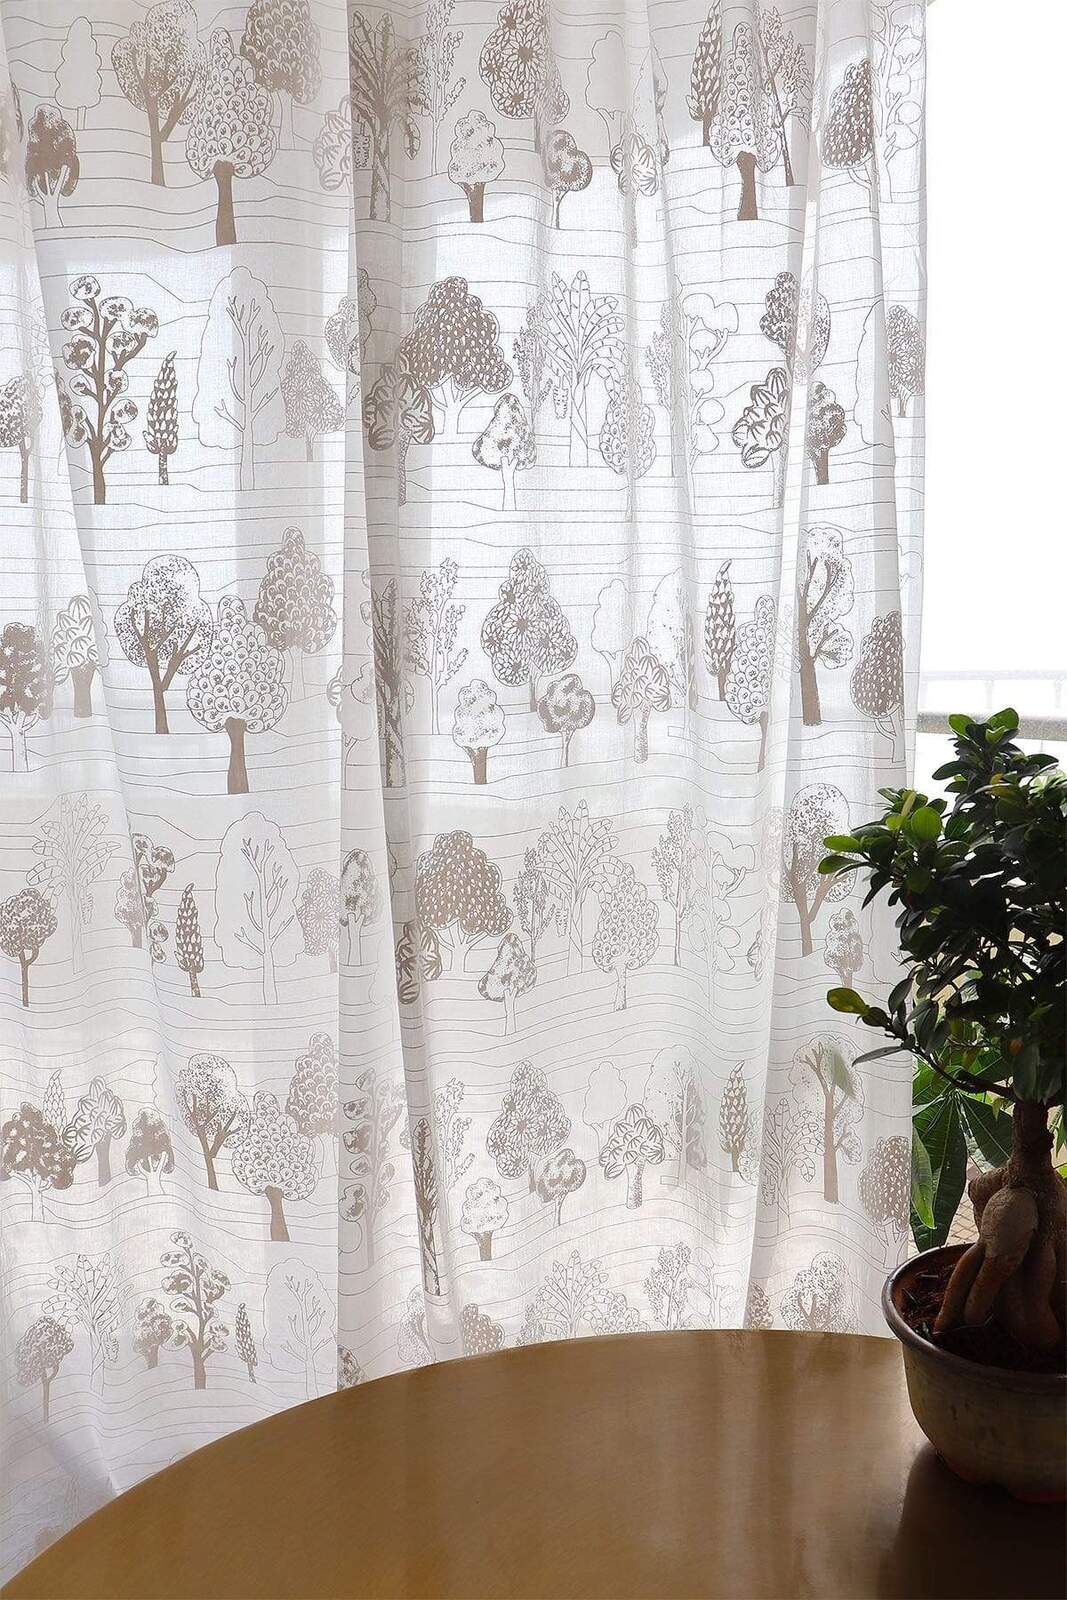 buy-treeline-khadi-sheer-fabric-and-curtains-voile-online-freedomtree-in-15362254962787.jpg